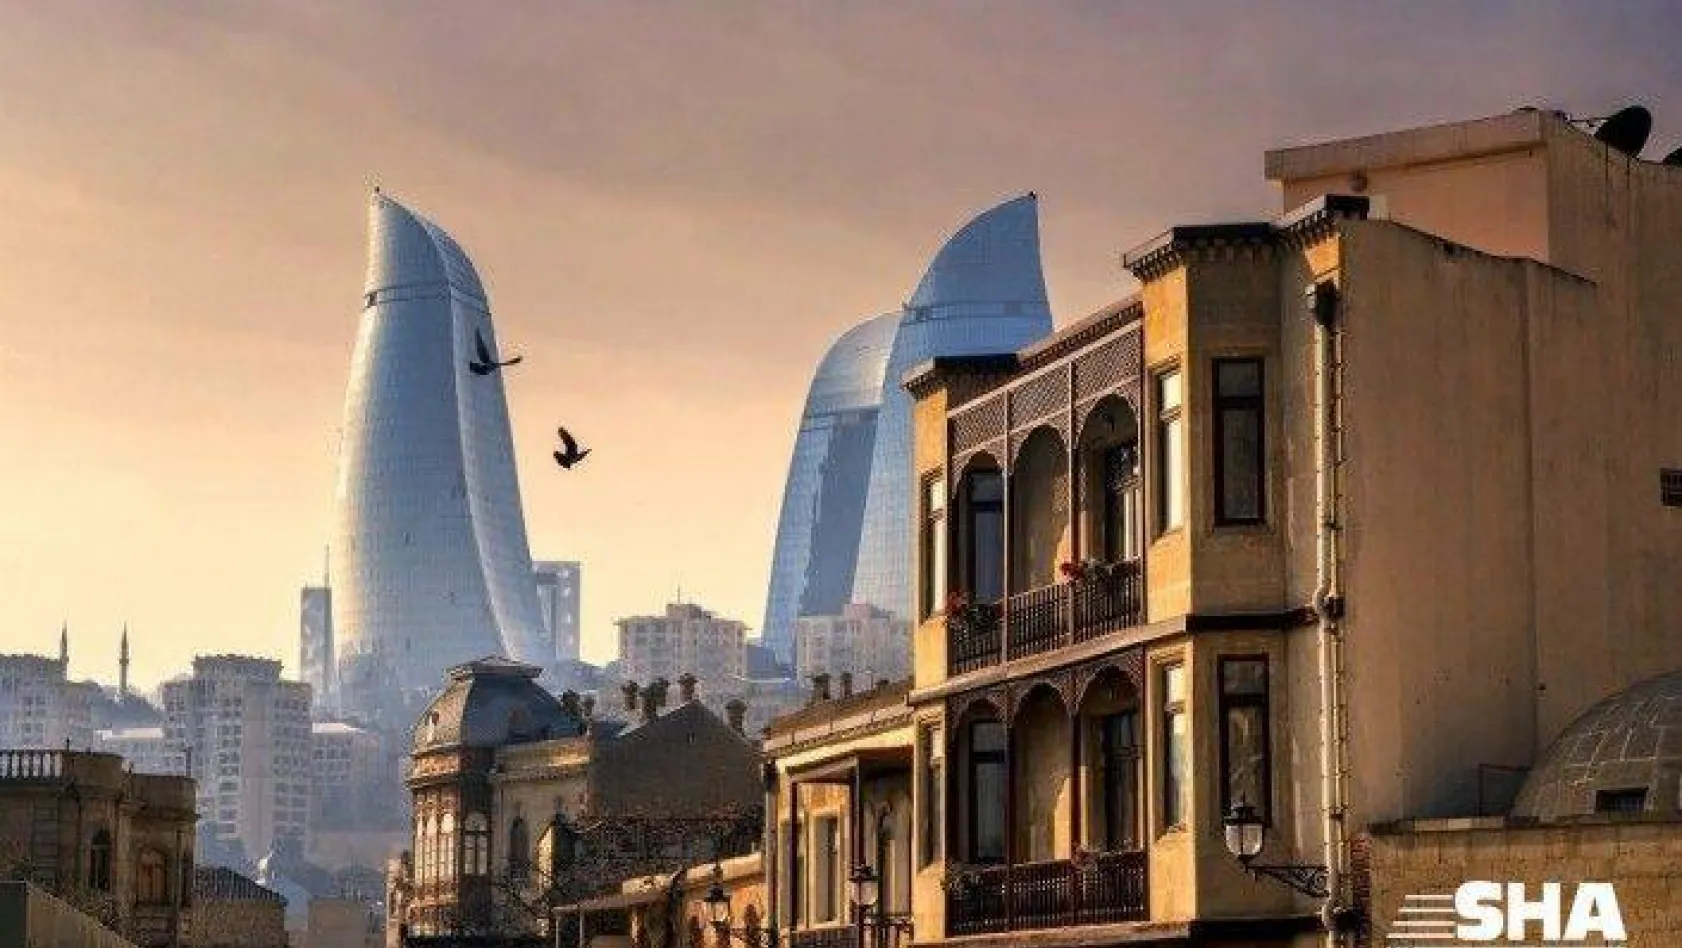 Azerbaycan Turizm Kurulu Sağlık ve Güvenlik kampanyası başlattı